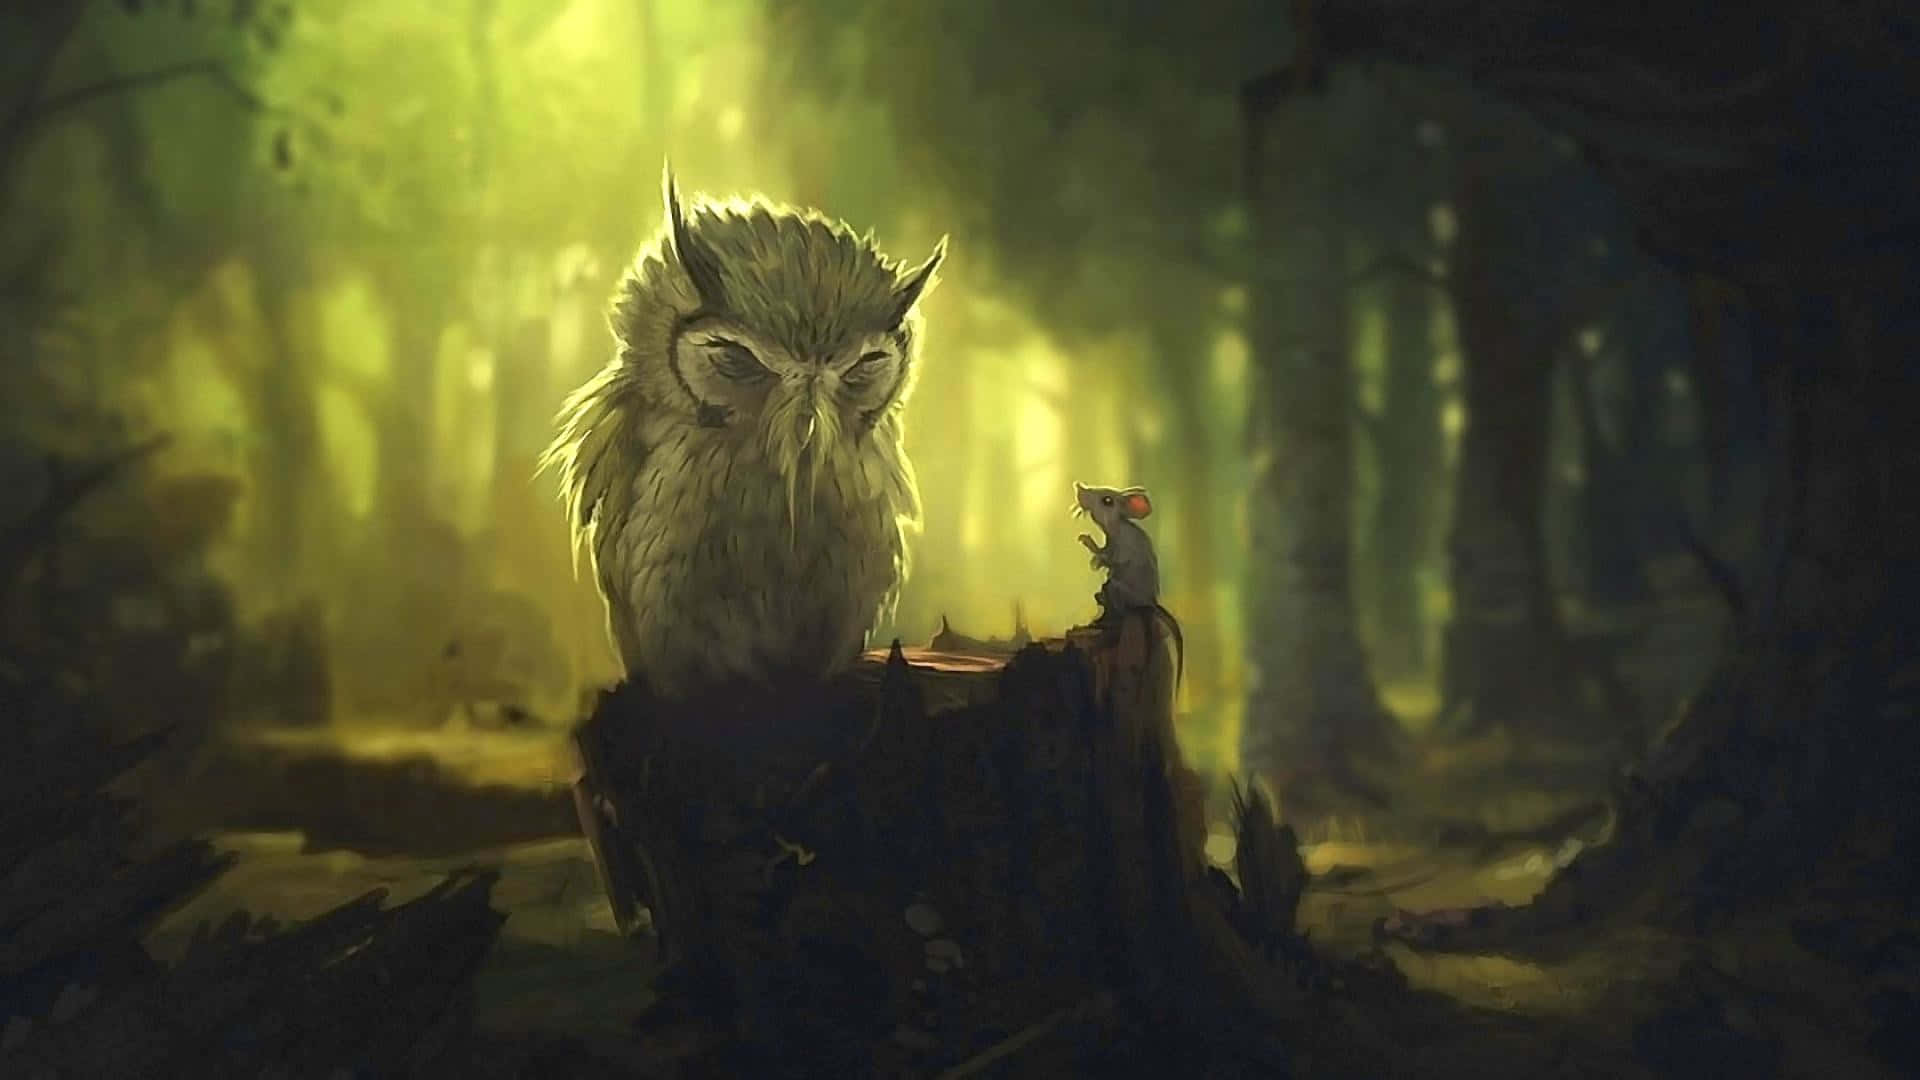 En ugle står på en stump i skoven. Wallpaper